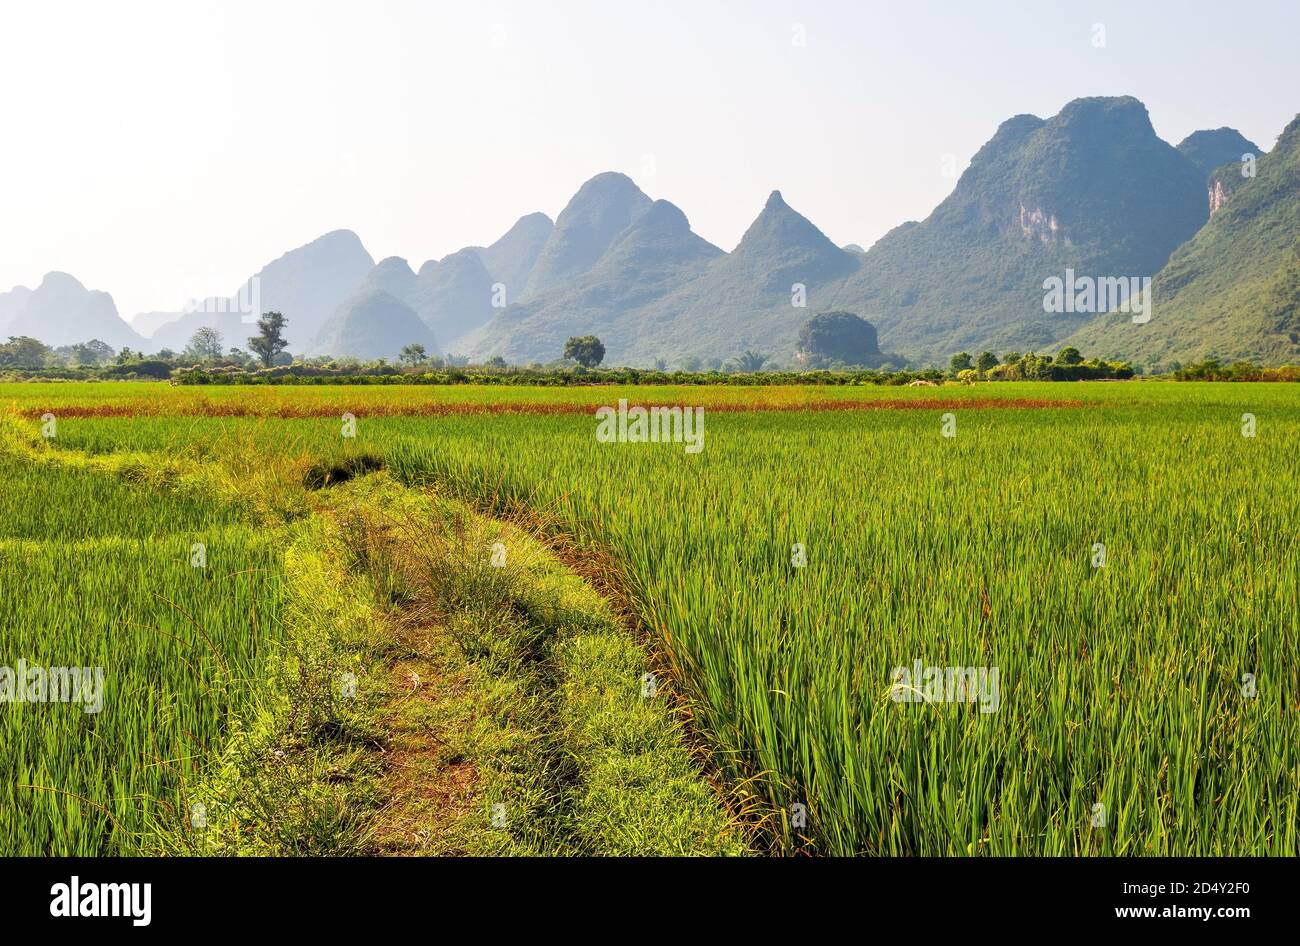 Paysage de riz paddy avec formations rocheuses karstiques géologiques, Yangshuo, province de Guangxi, Chine. Banque D'Images